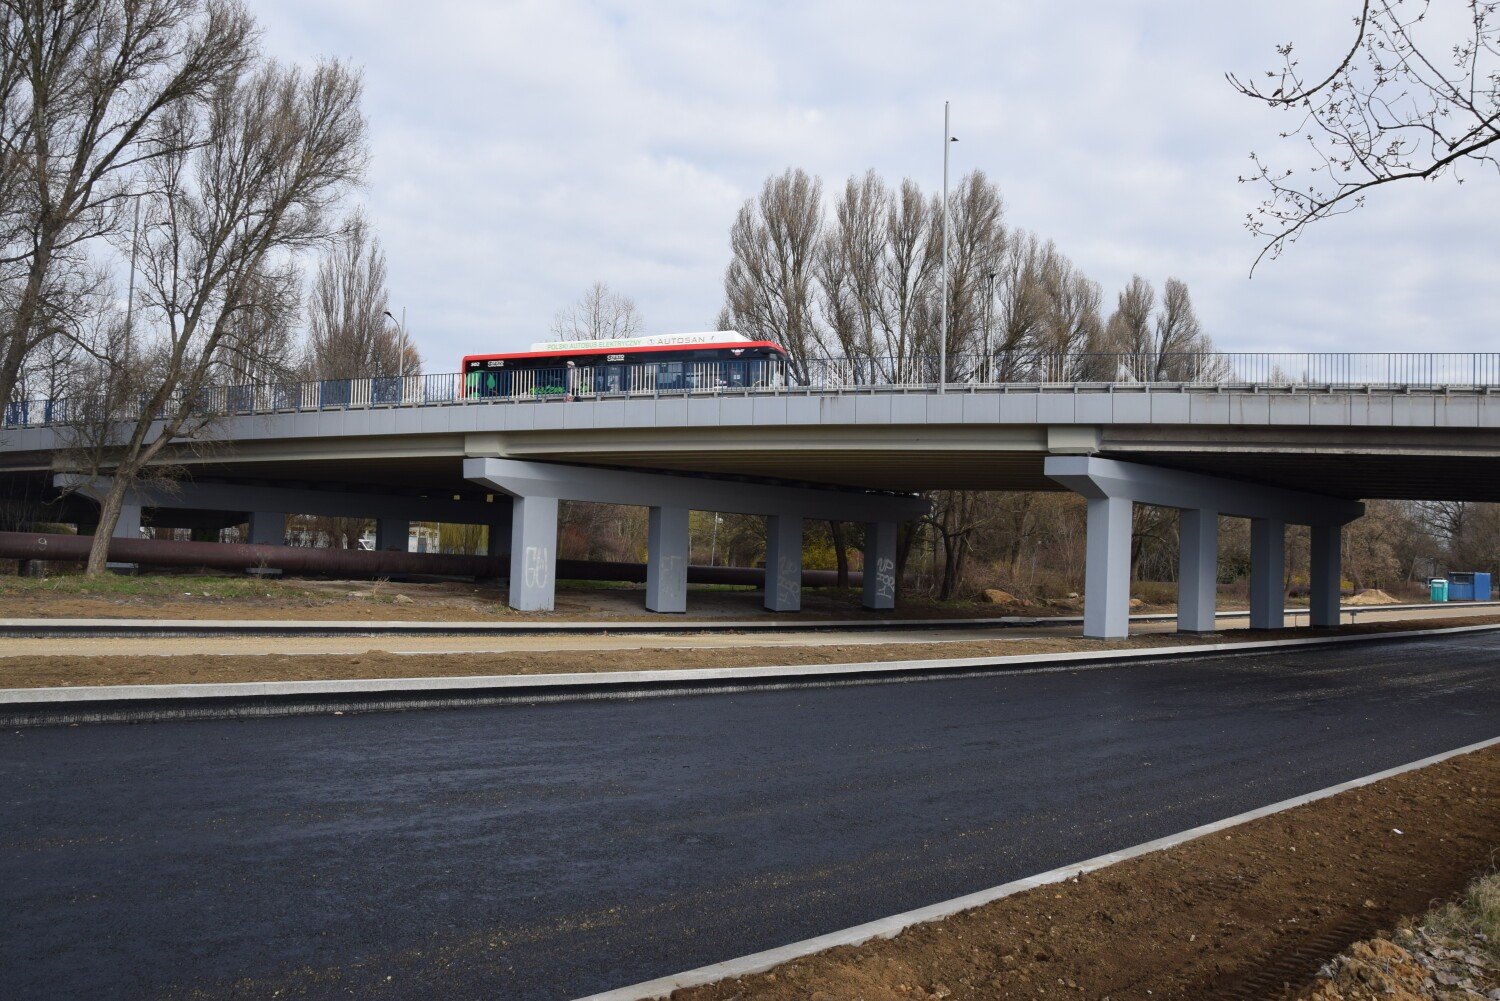 Se vertió el primer asfalto sobre la DK91 después de su restauración en Czestochowa.  ¿Qué sucede en el sitio de construcción?